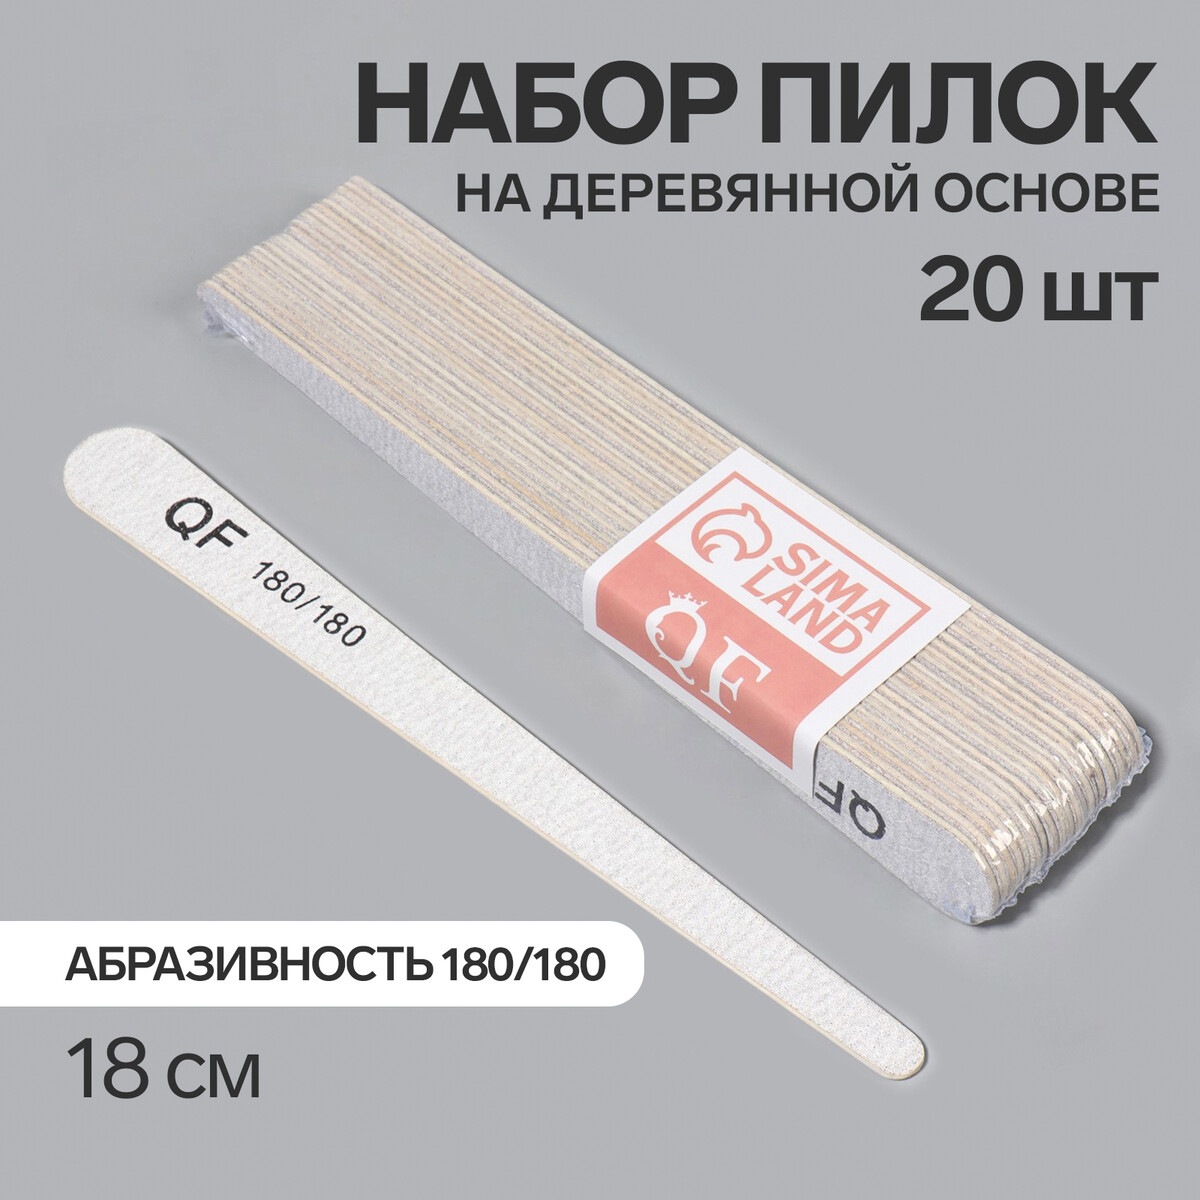 Пилка-наждак, набор 20 шт, деревянная основа, абразивность 180/180, 18 см, цвет серый палка основа для макраме деревянная без покрытия d 1 × 40 см